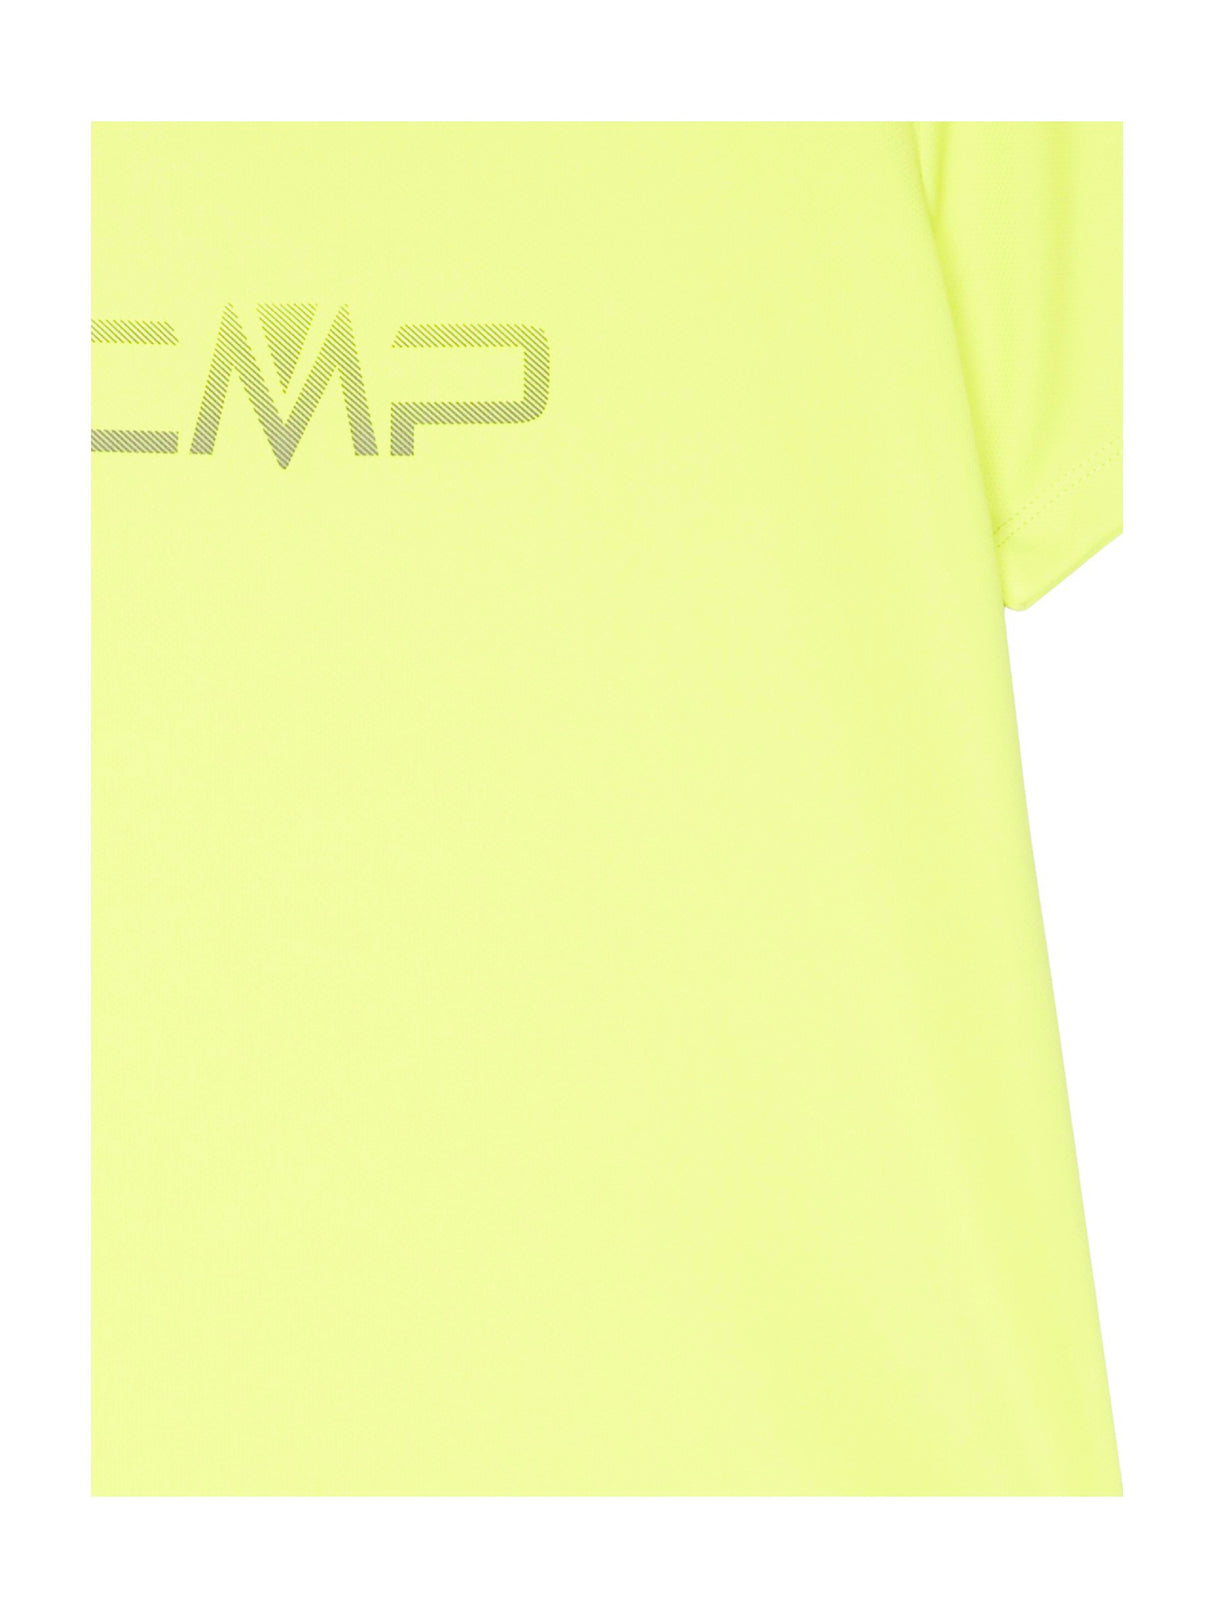 CMP T-Shirt Funktion für Damen